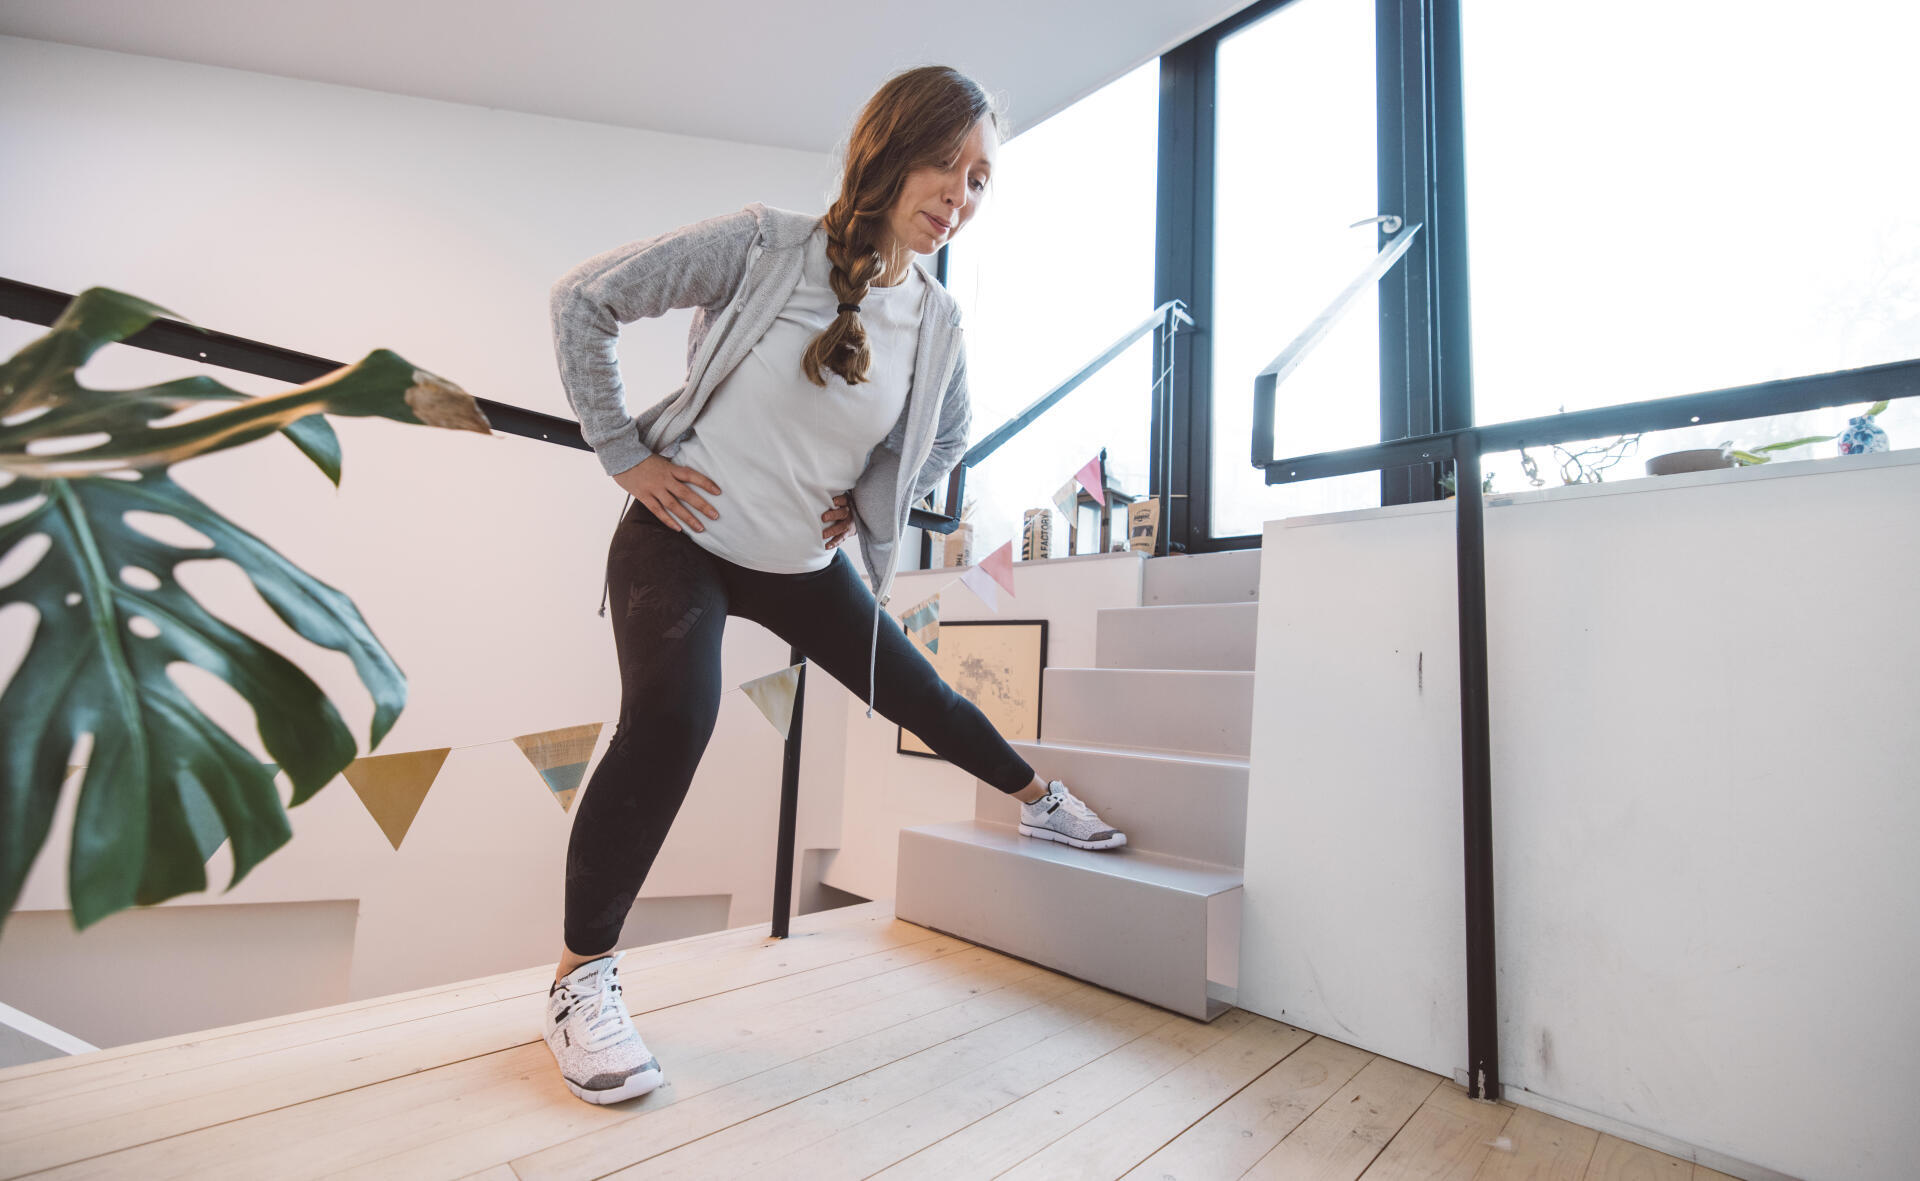 Monter les escaliers : le meilleur sport pour la santé